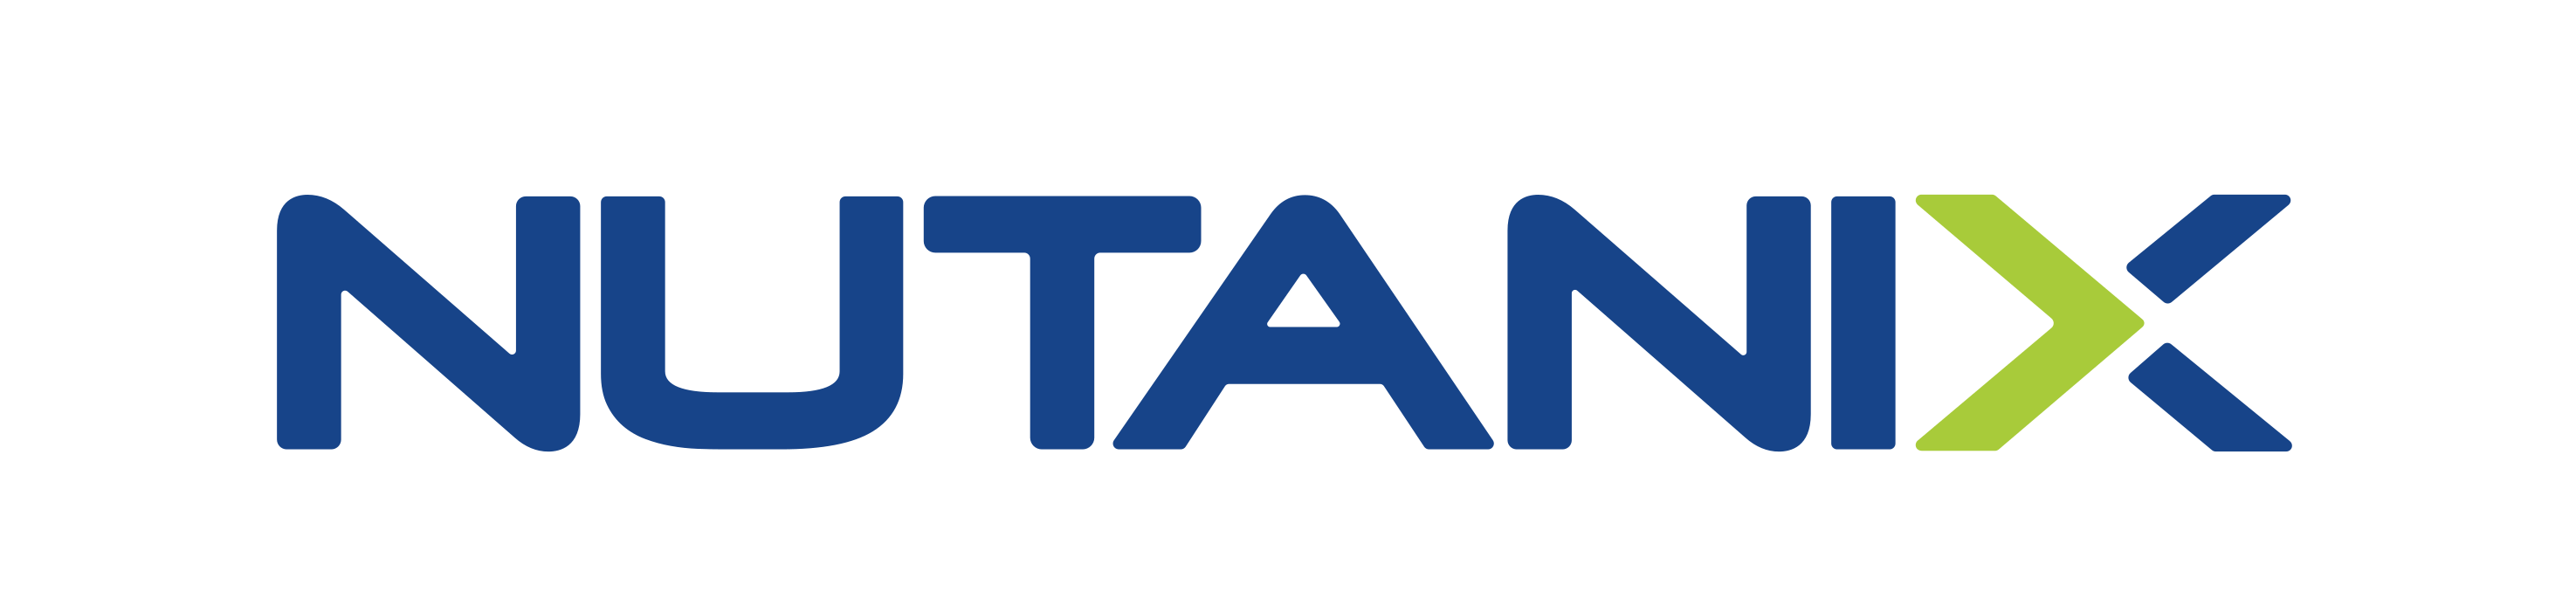 Nutanix-logo